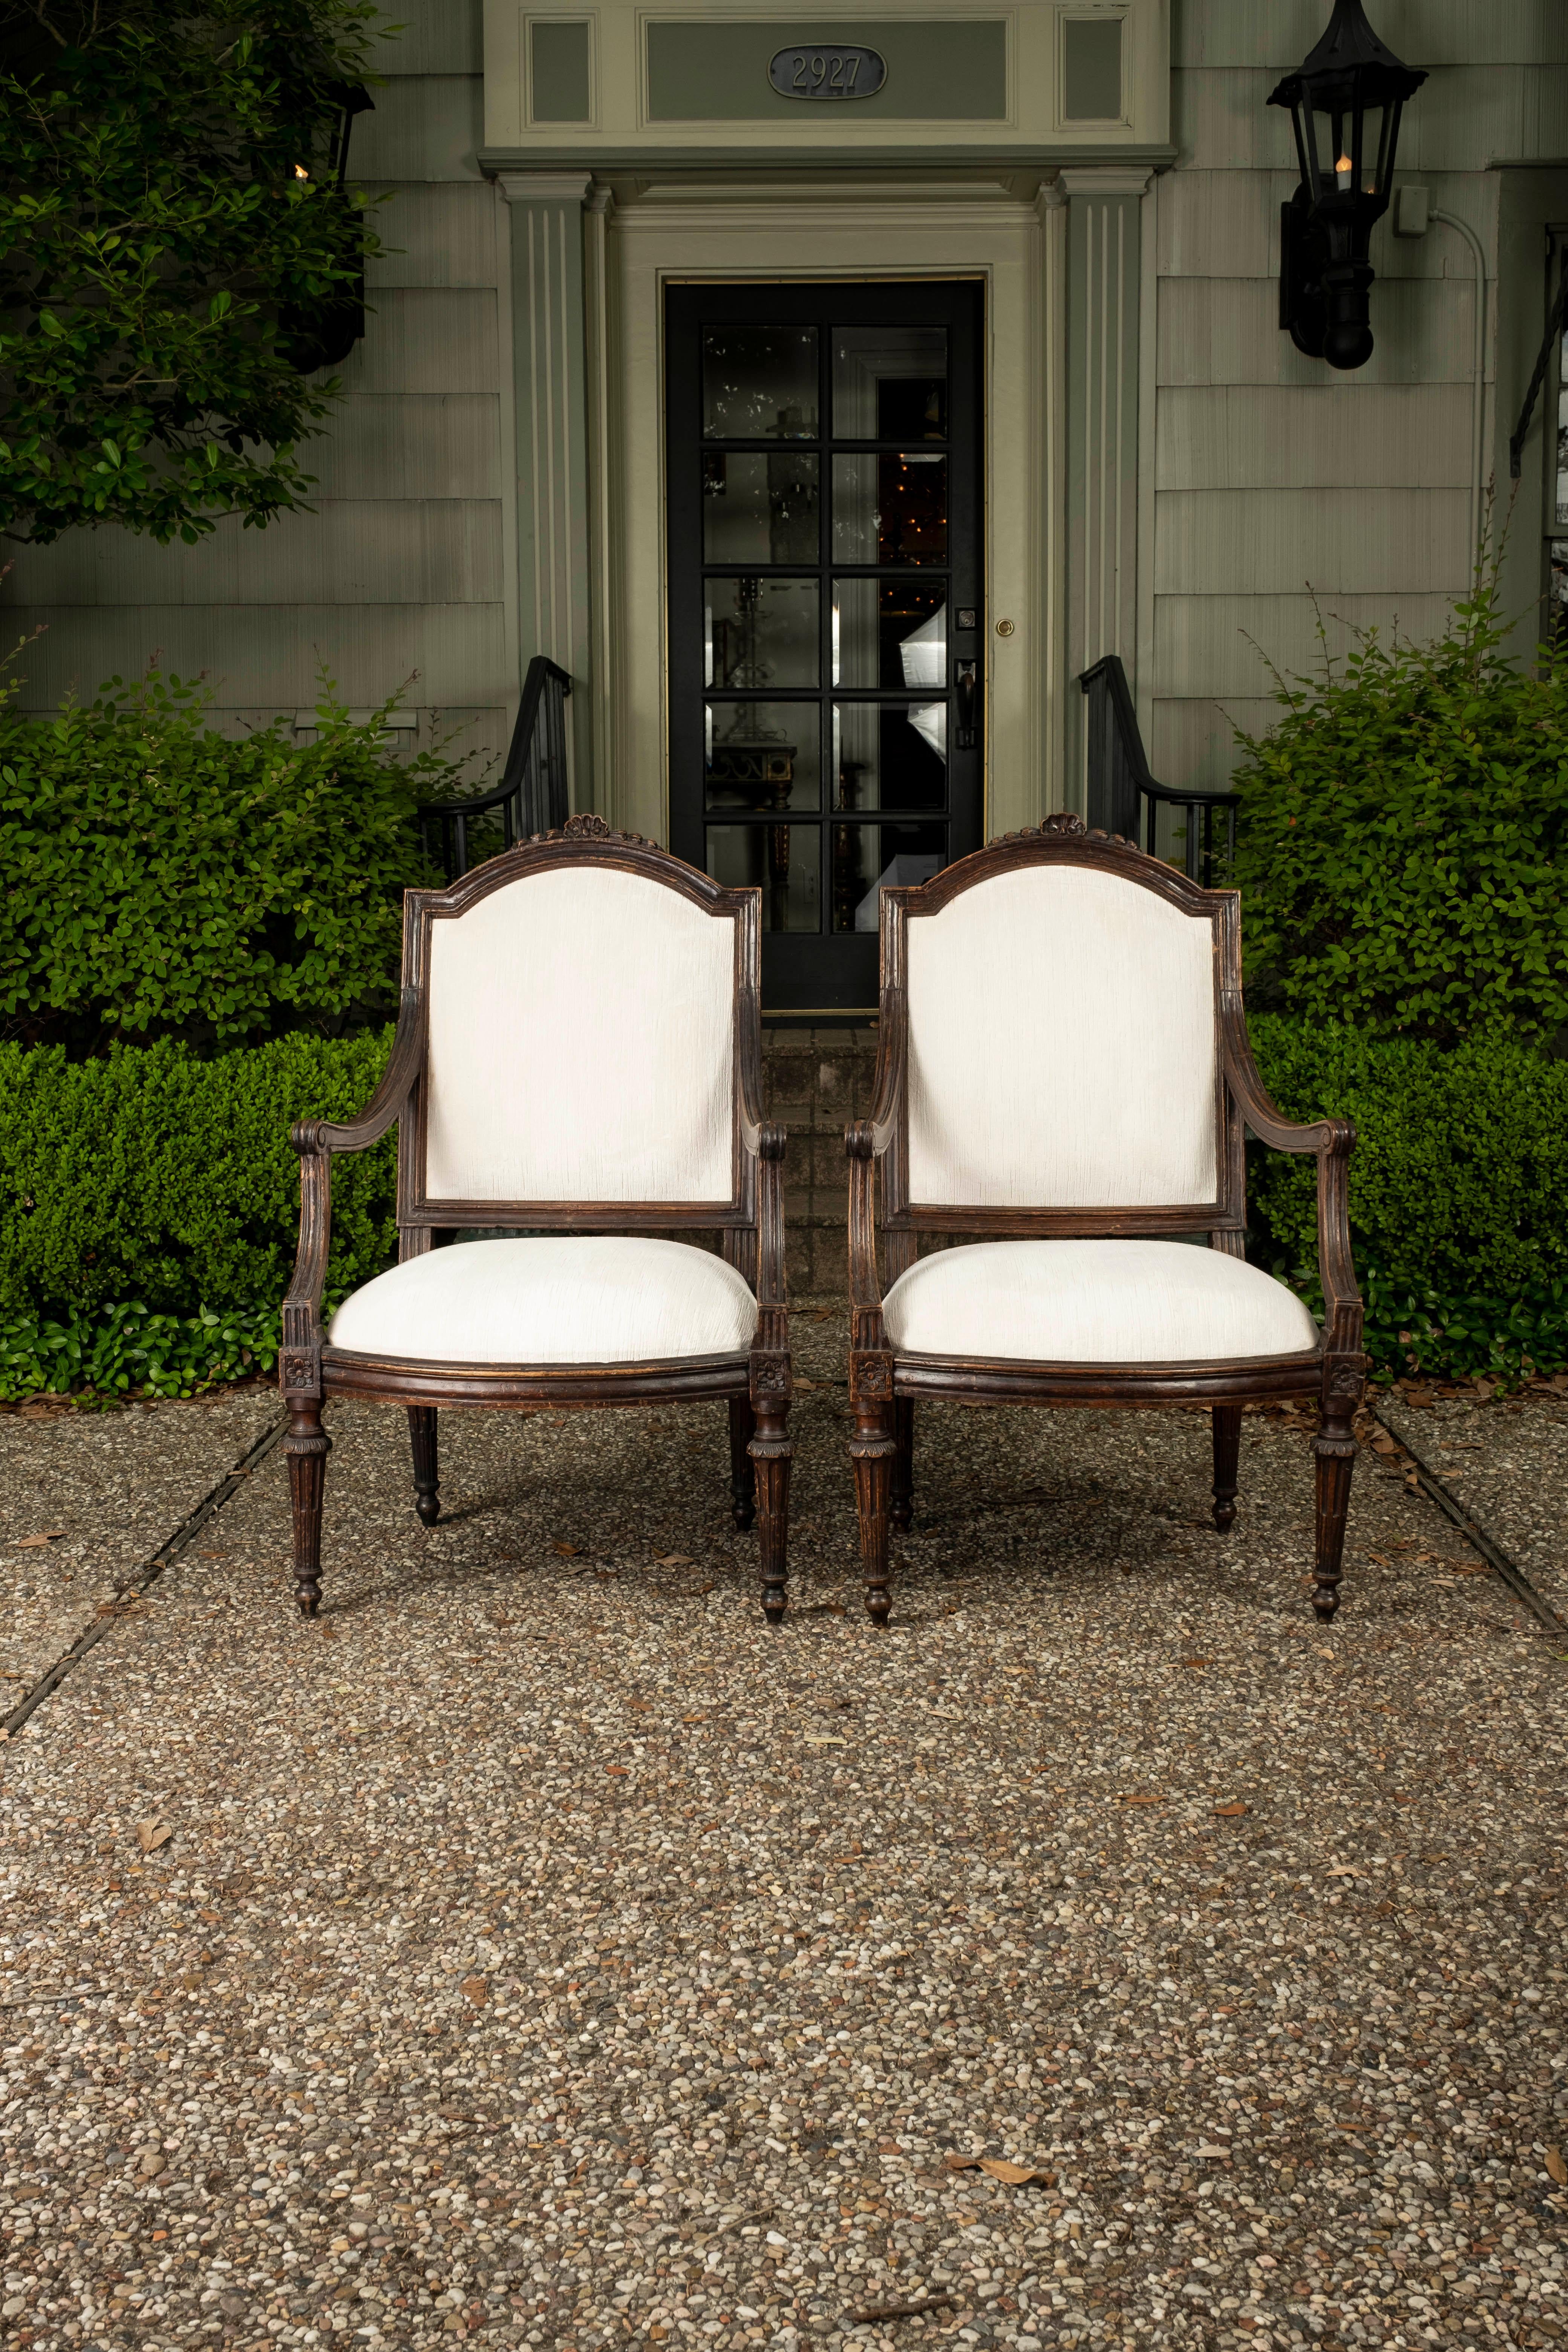 Paire de chaises d'appoint en noyer toscan du XVIIIe siècle. Ces grands fauteuils ou chaises d'appoint italiens de style Louis XVI provenant de la région de Toscane ont été démontés jusqu'au cadre et tapissés professionnellement de velours blanc